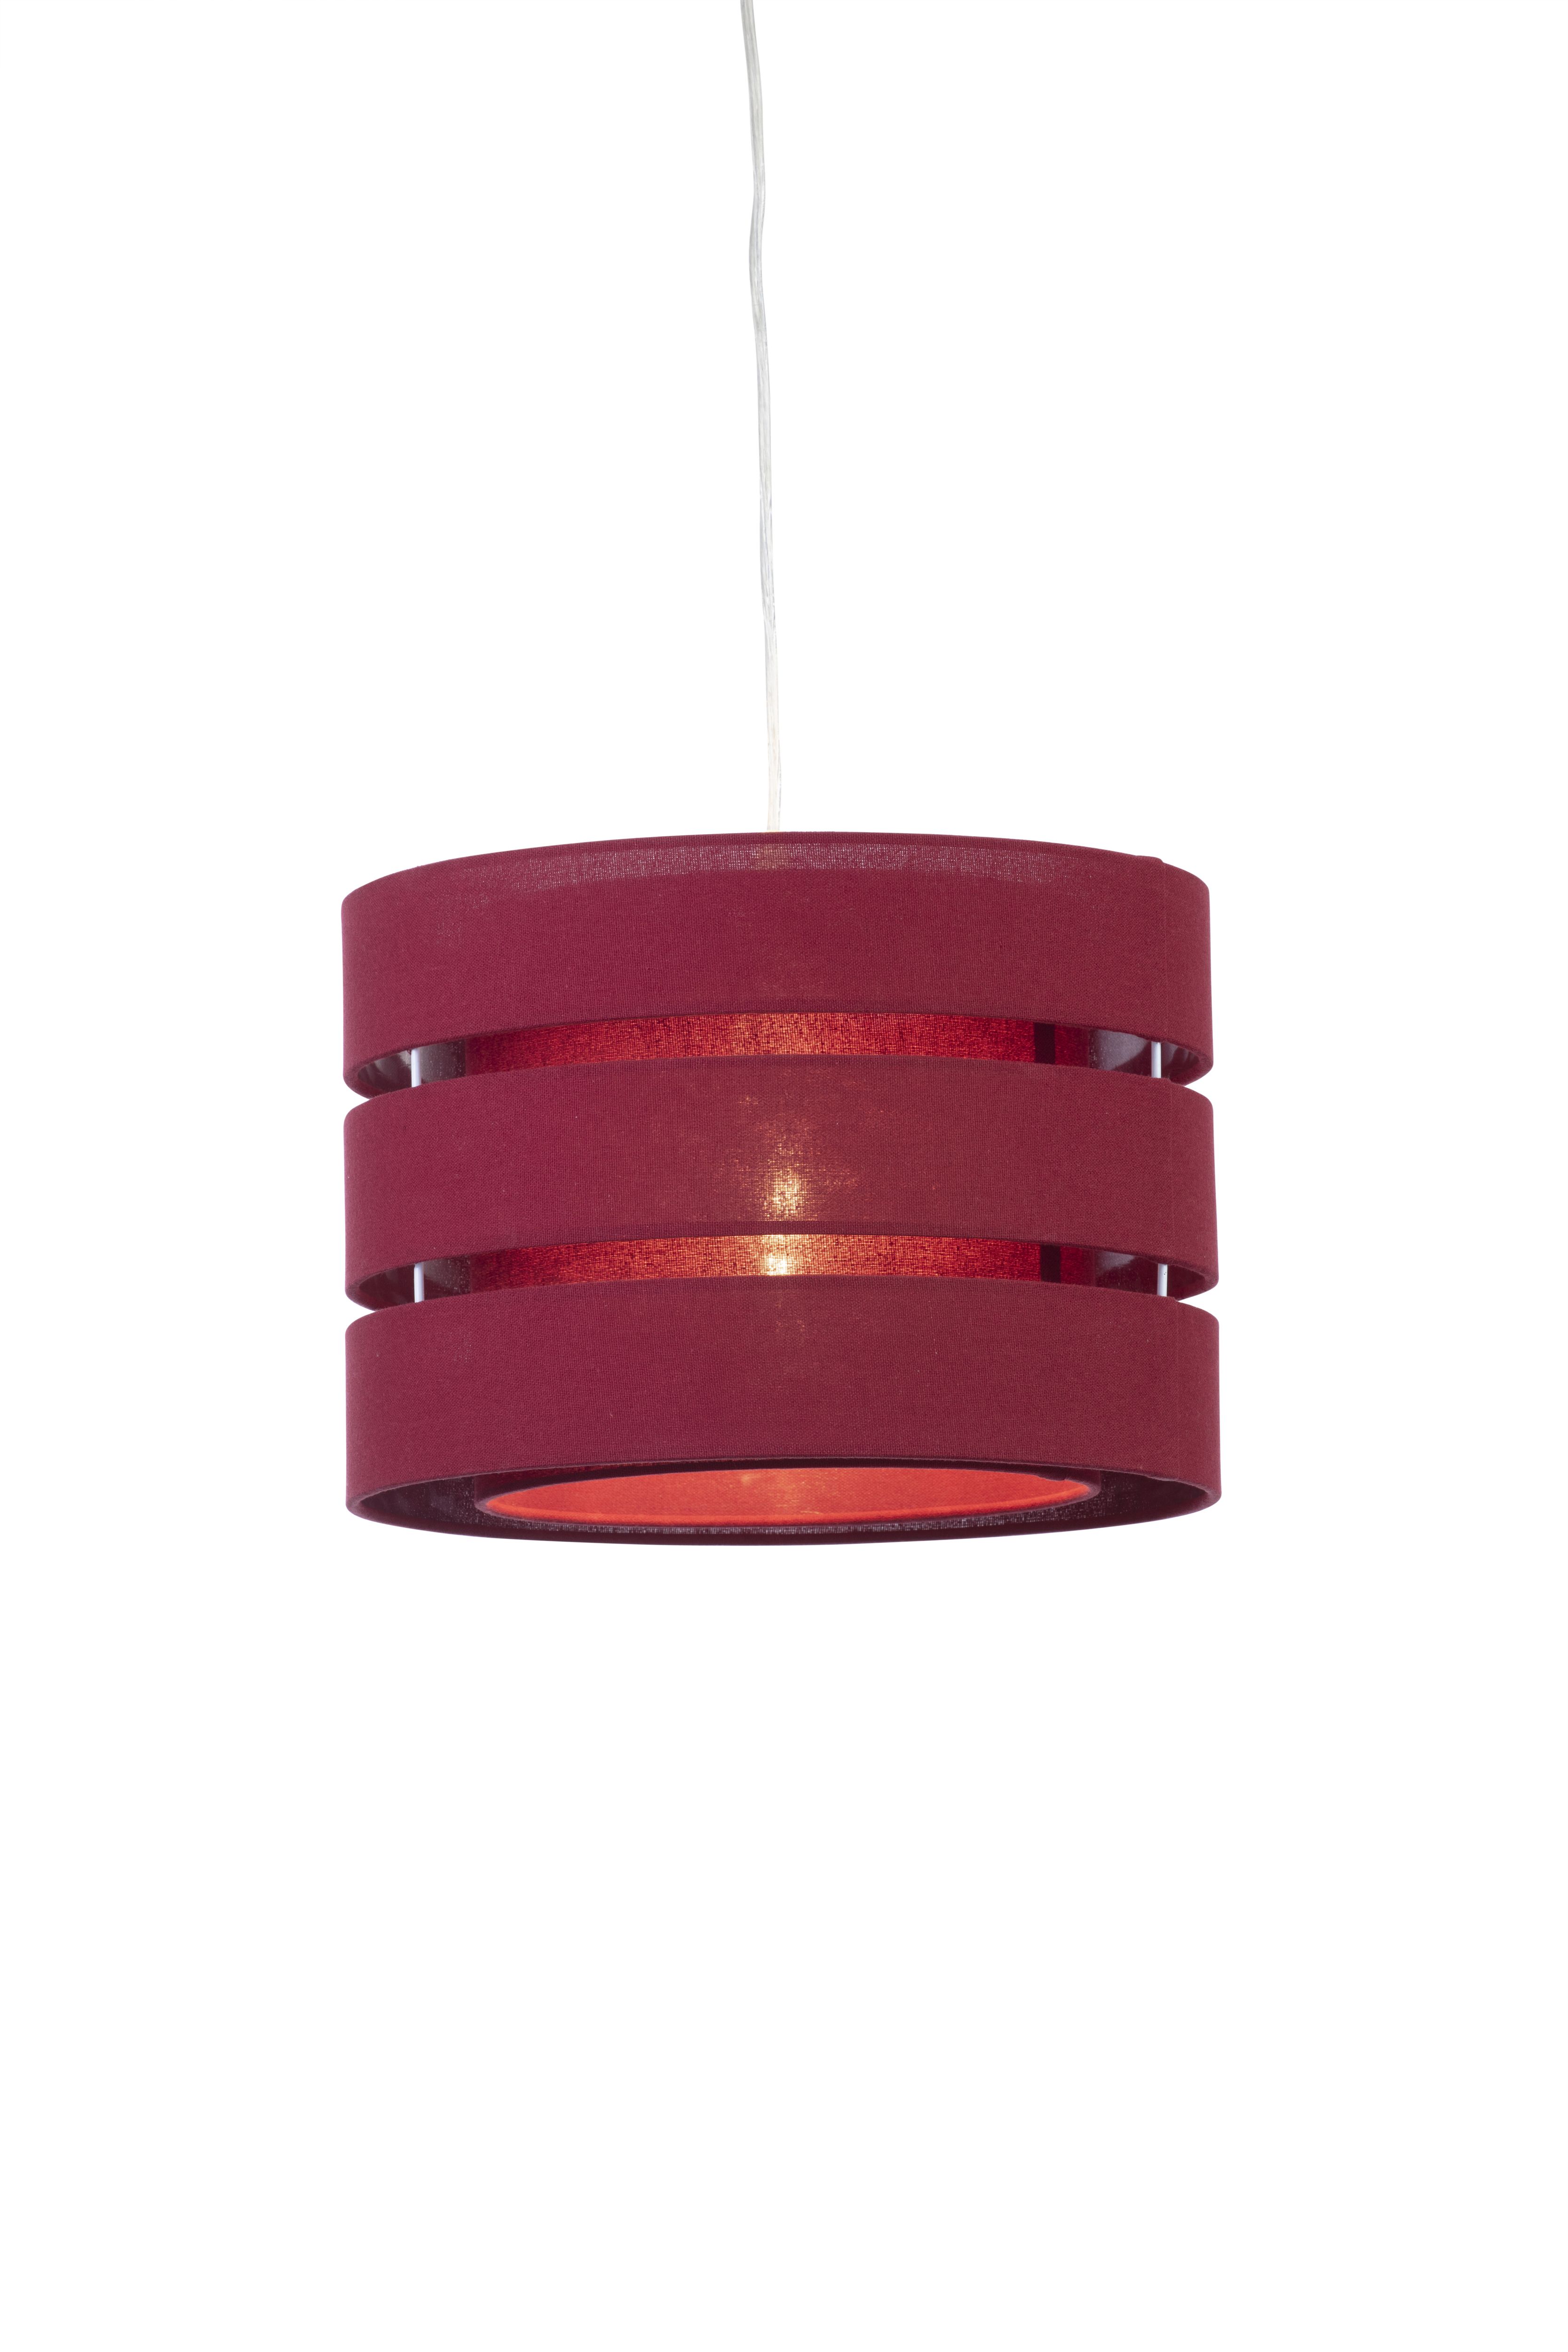 Trio Crimson red Pendant Light shade (D)35cm